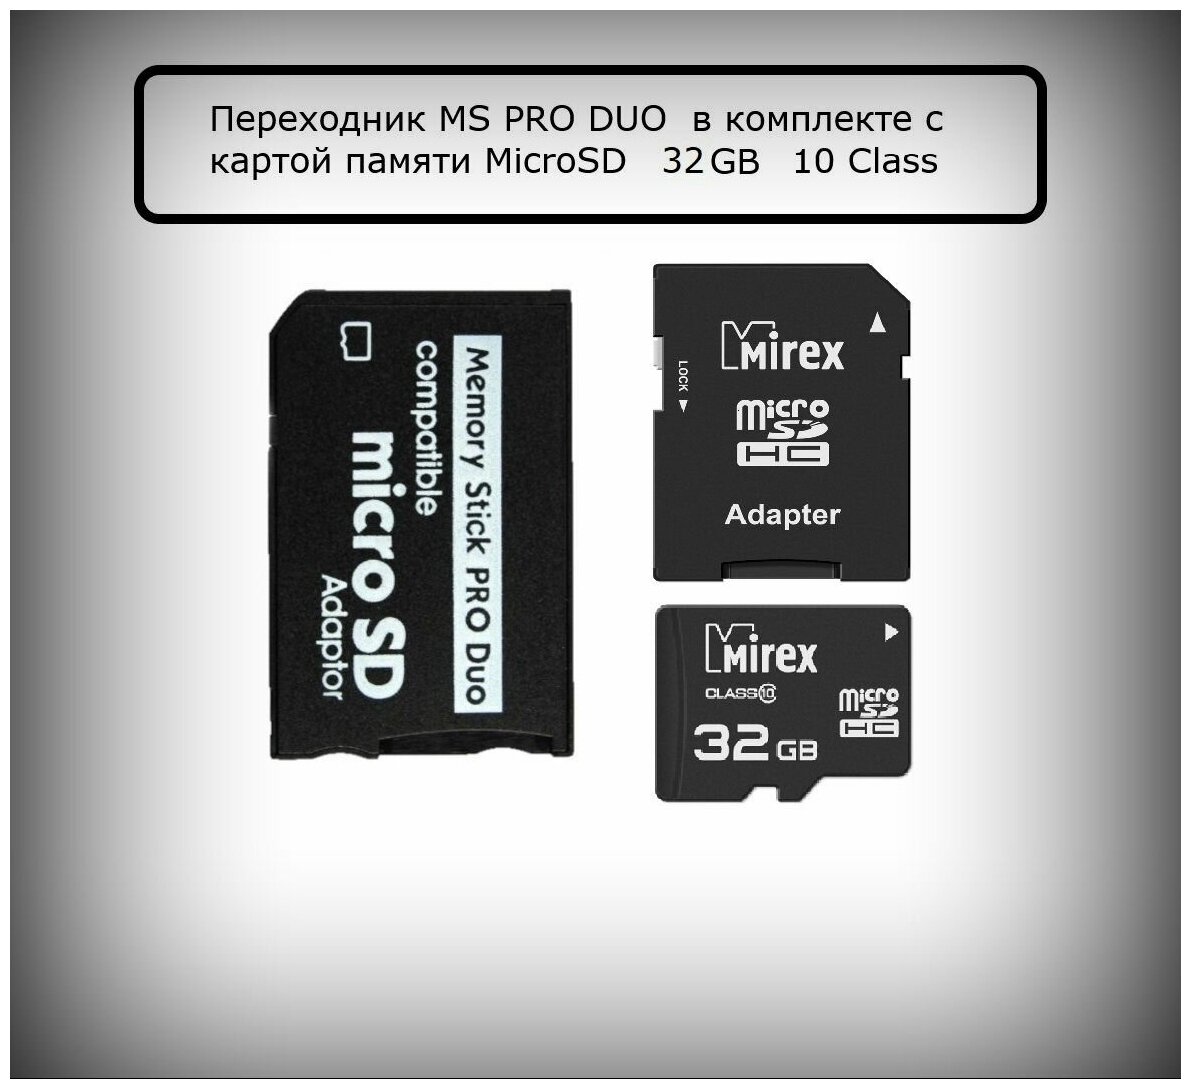 Переходник для PSP/Memory Stick Pro Duo/ в комплекте Mirex MicroSD на 32 Гб